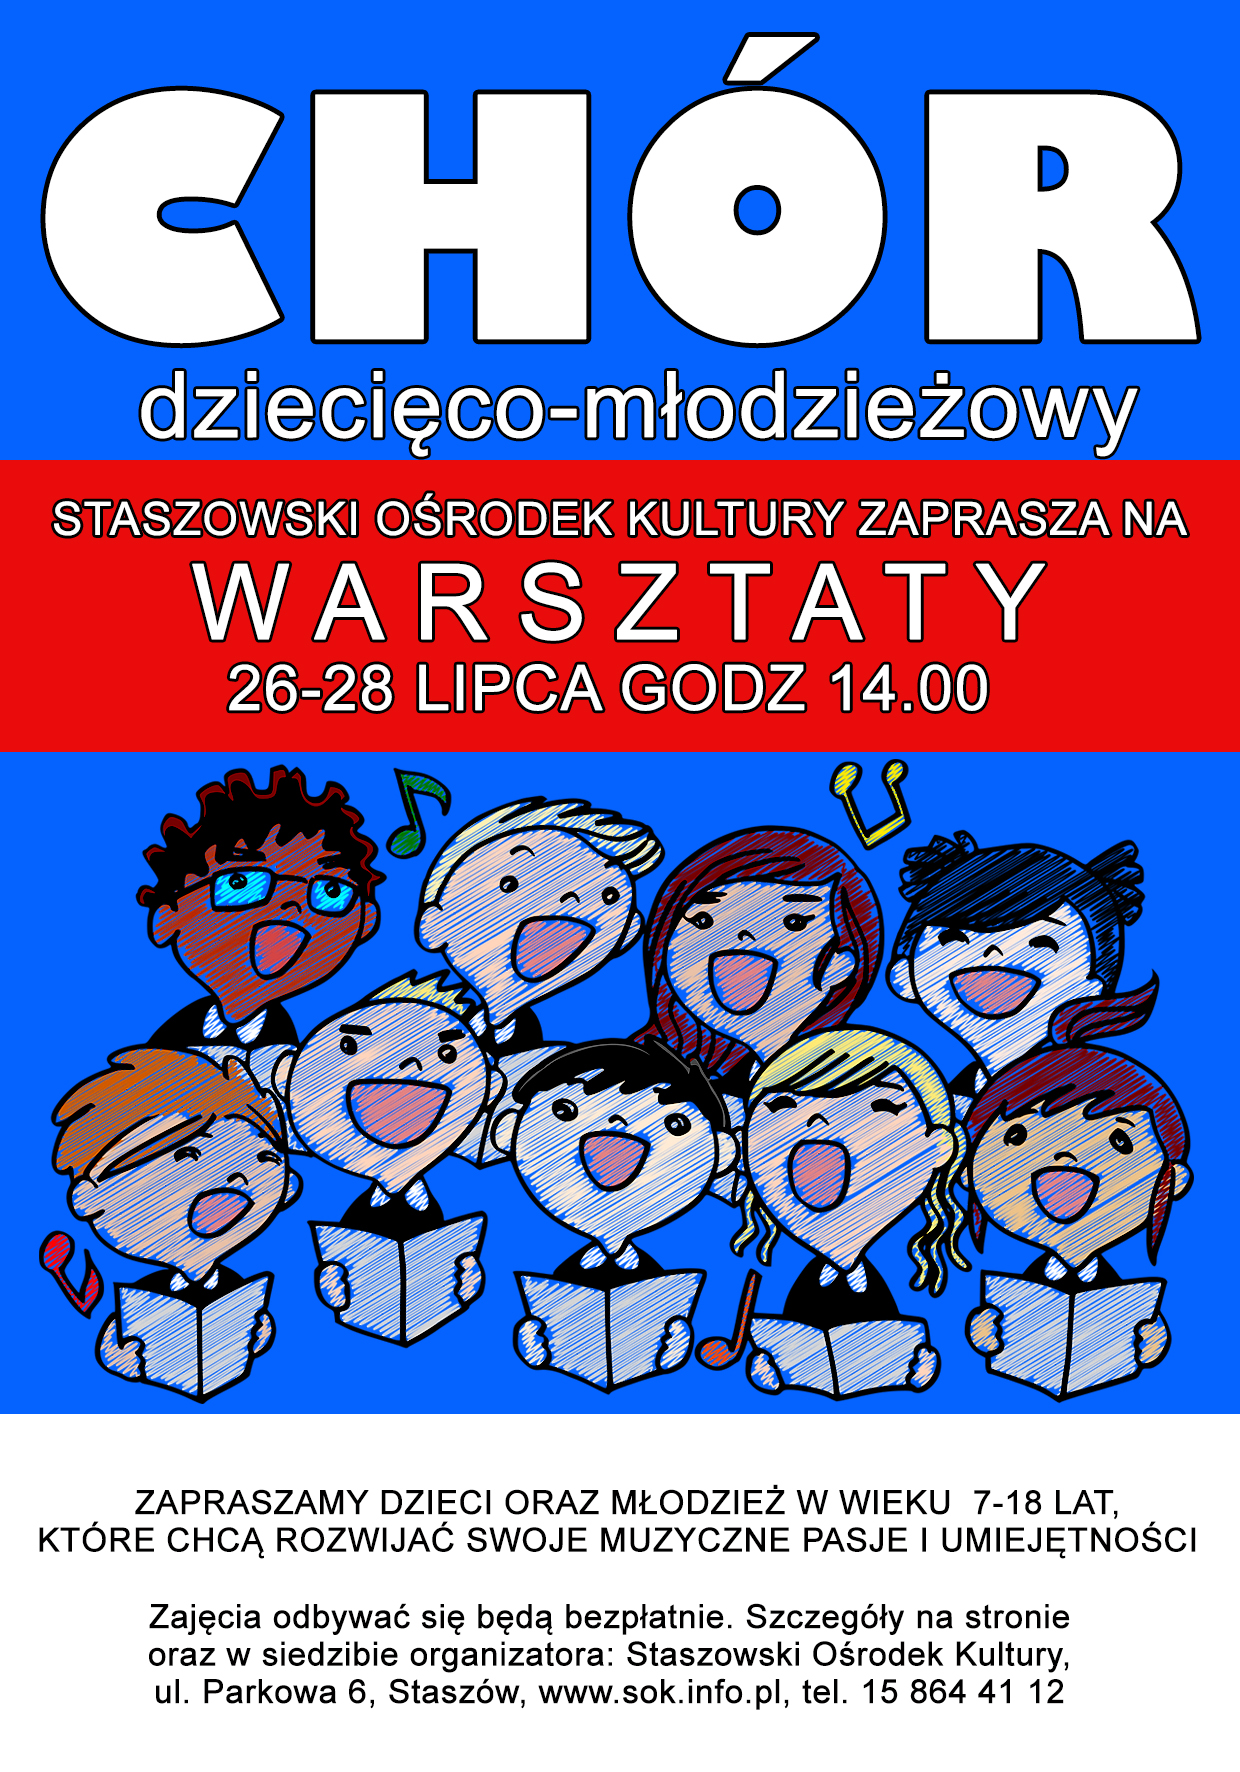 Plakat: Staszowski Ośrodek Kultury zaprasza na warsztaty chóru dziecięco-młodzieżowego. 26-28 lipca, godz. 14:00.